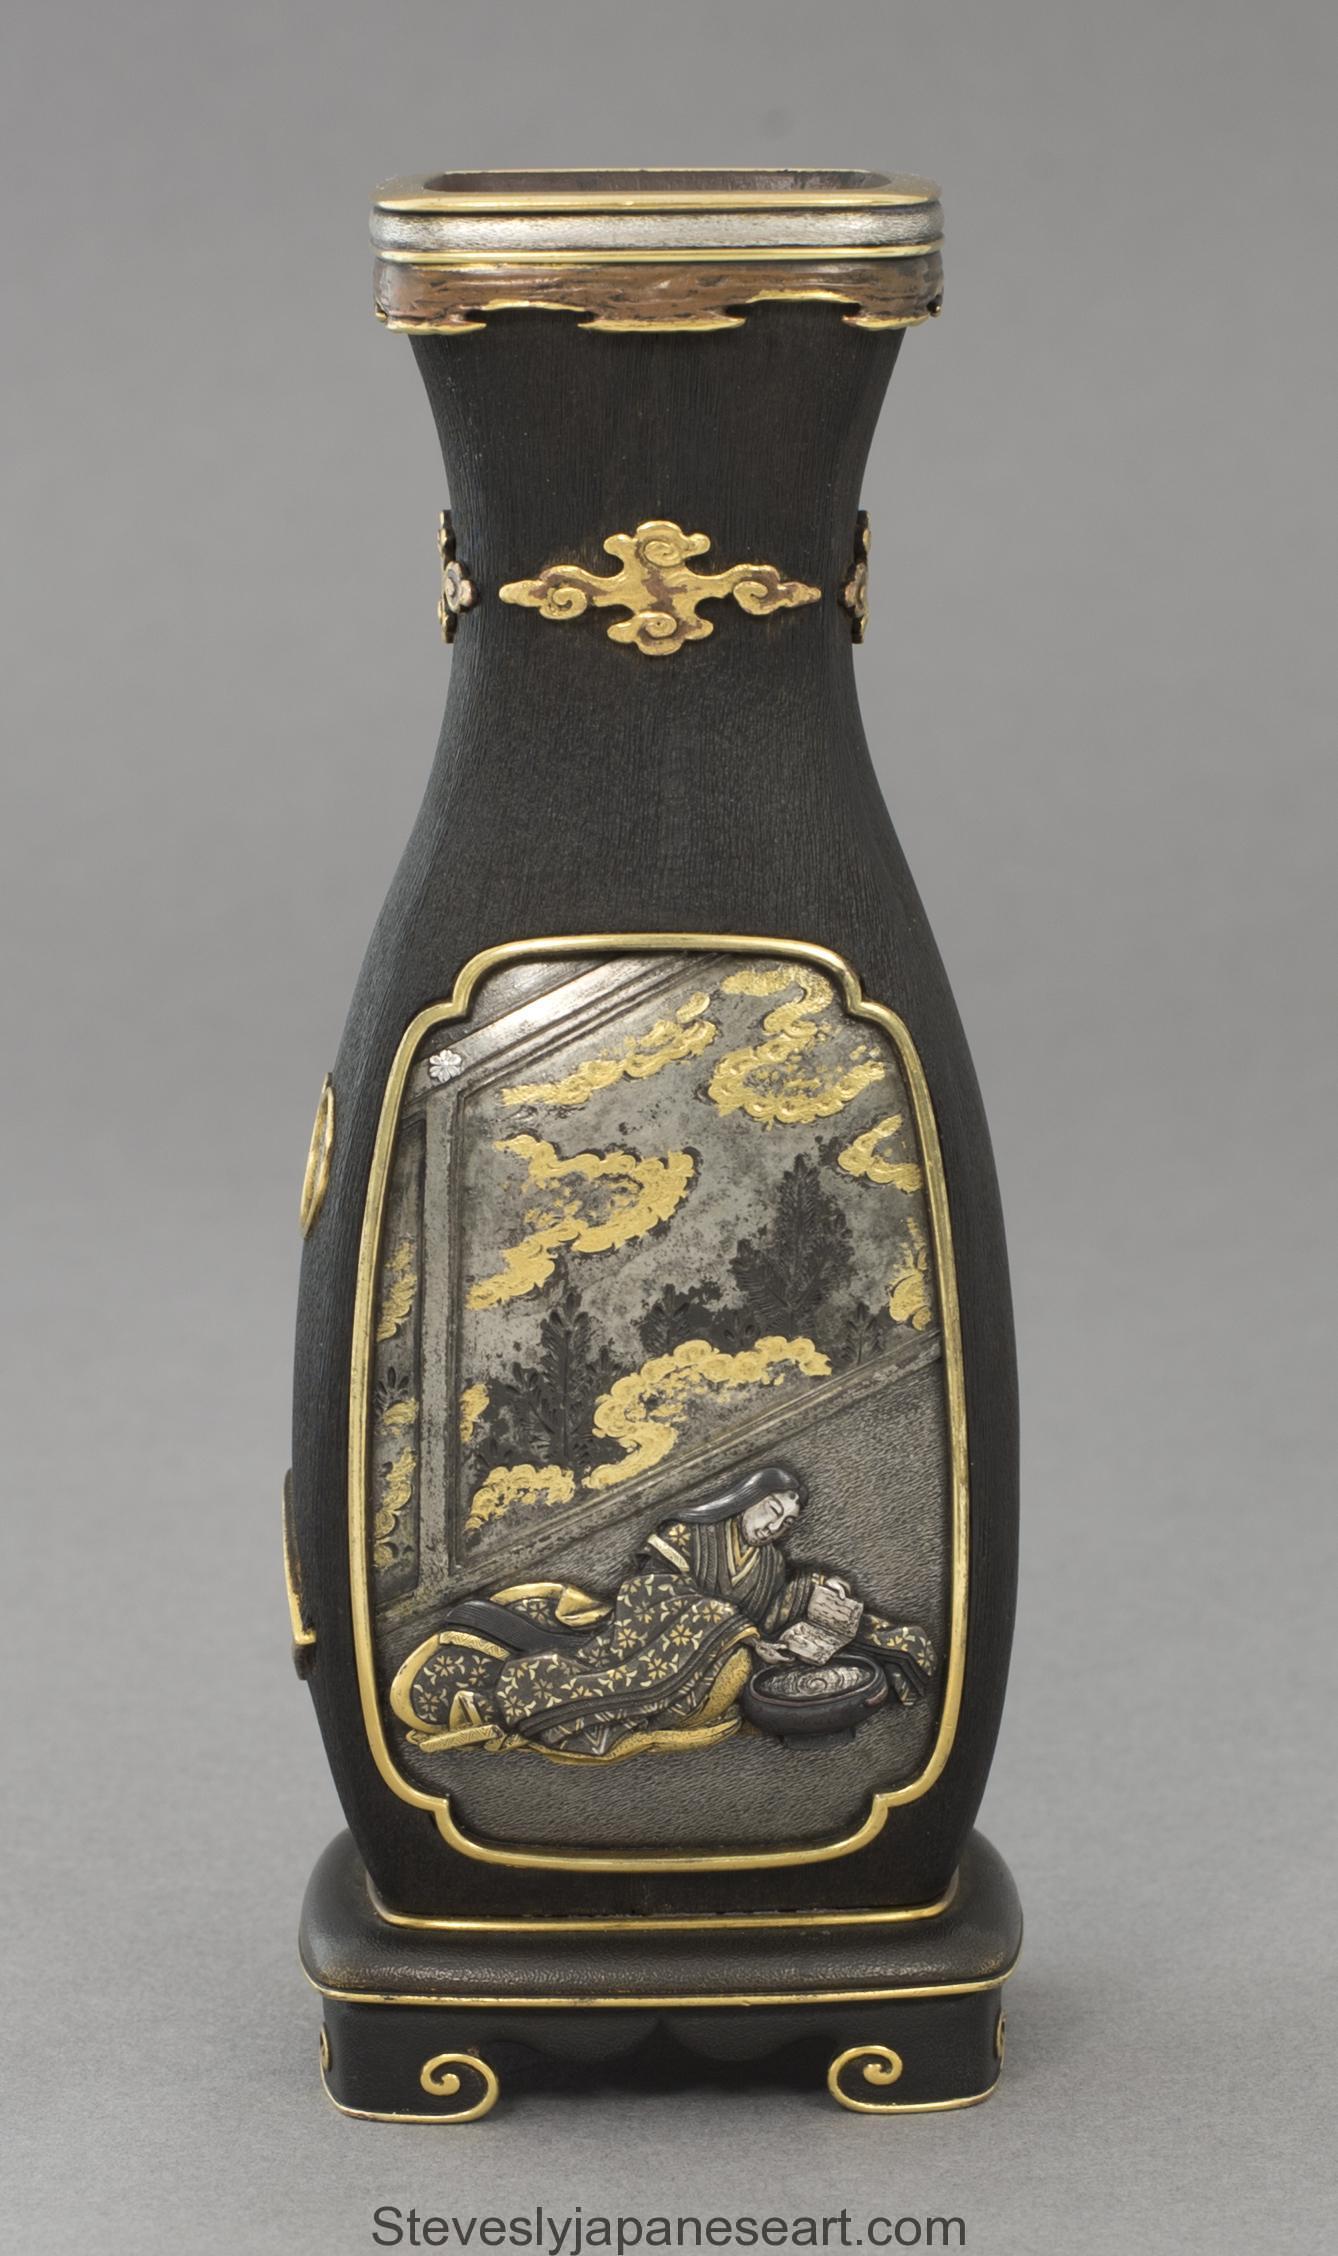 Dans le cadre de notre collection d'œuvres d'art japonaises, nous sommes ravis d'offrir cette paire de vases très inhabituelle de la période Meiji 1868-1912, vers 1890. Les vases en bois dur sont soutenus par des pieds en console à volutes et sont